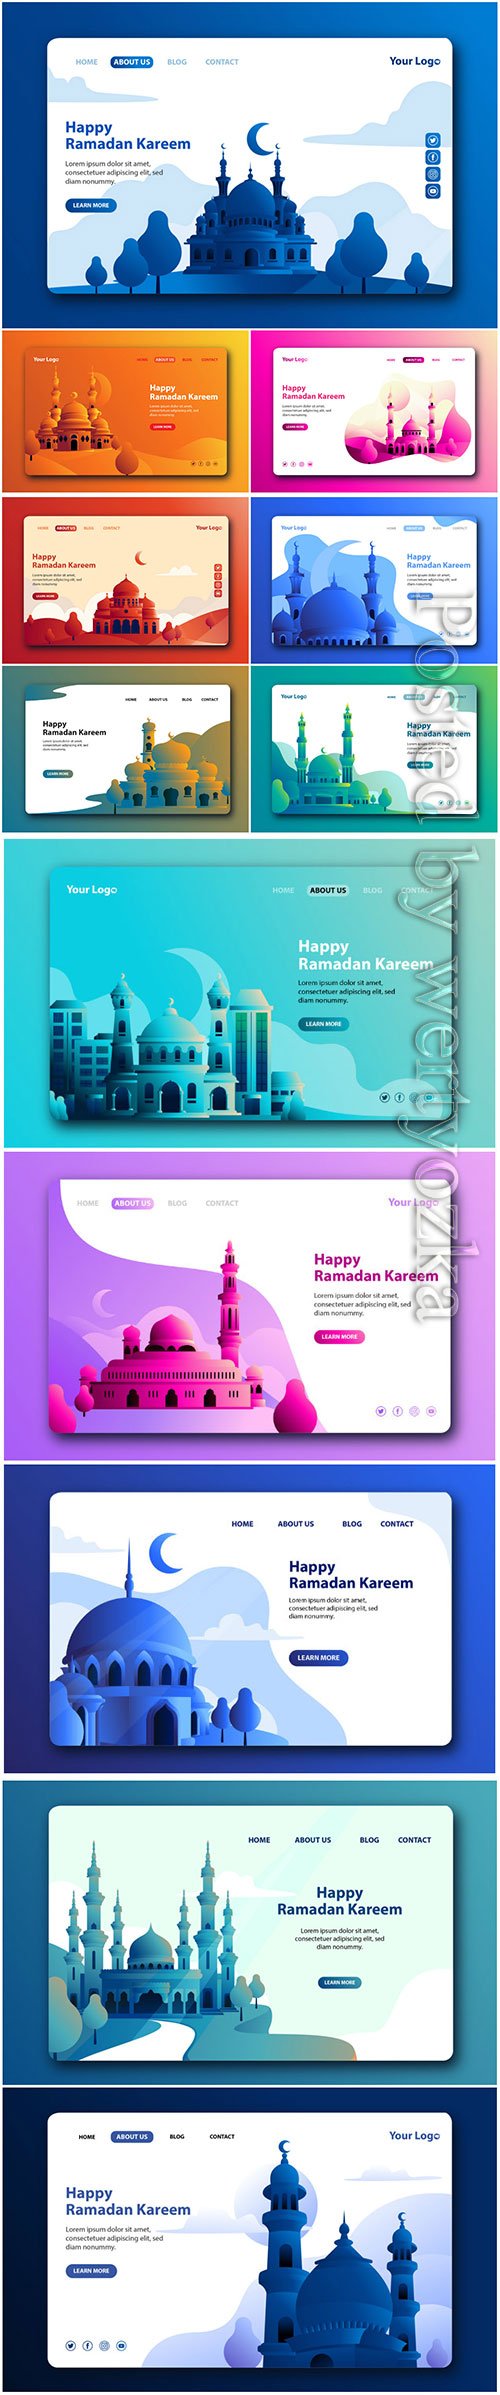 Happy Ramadan Kareem Landing Page